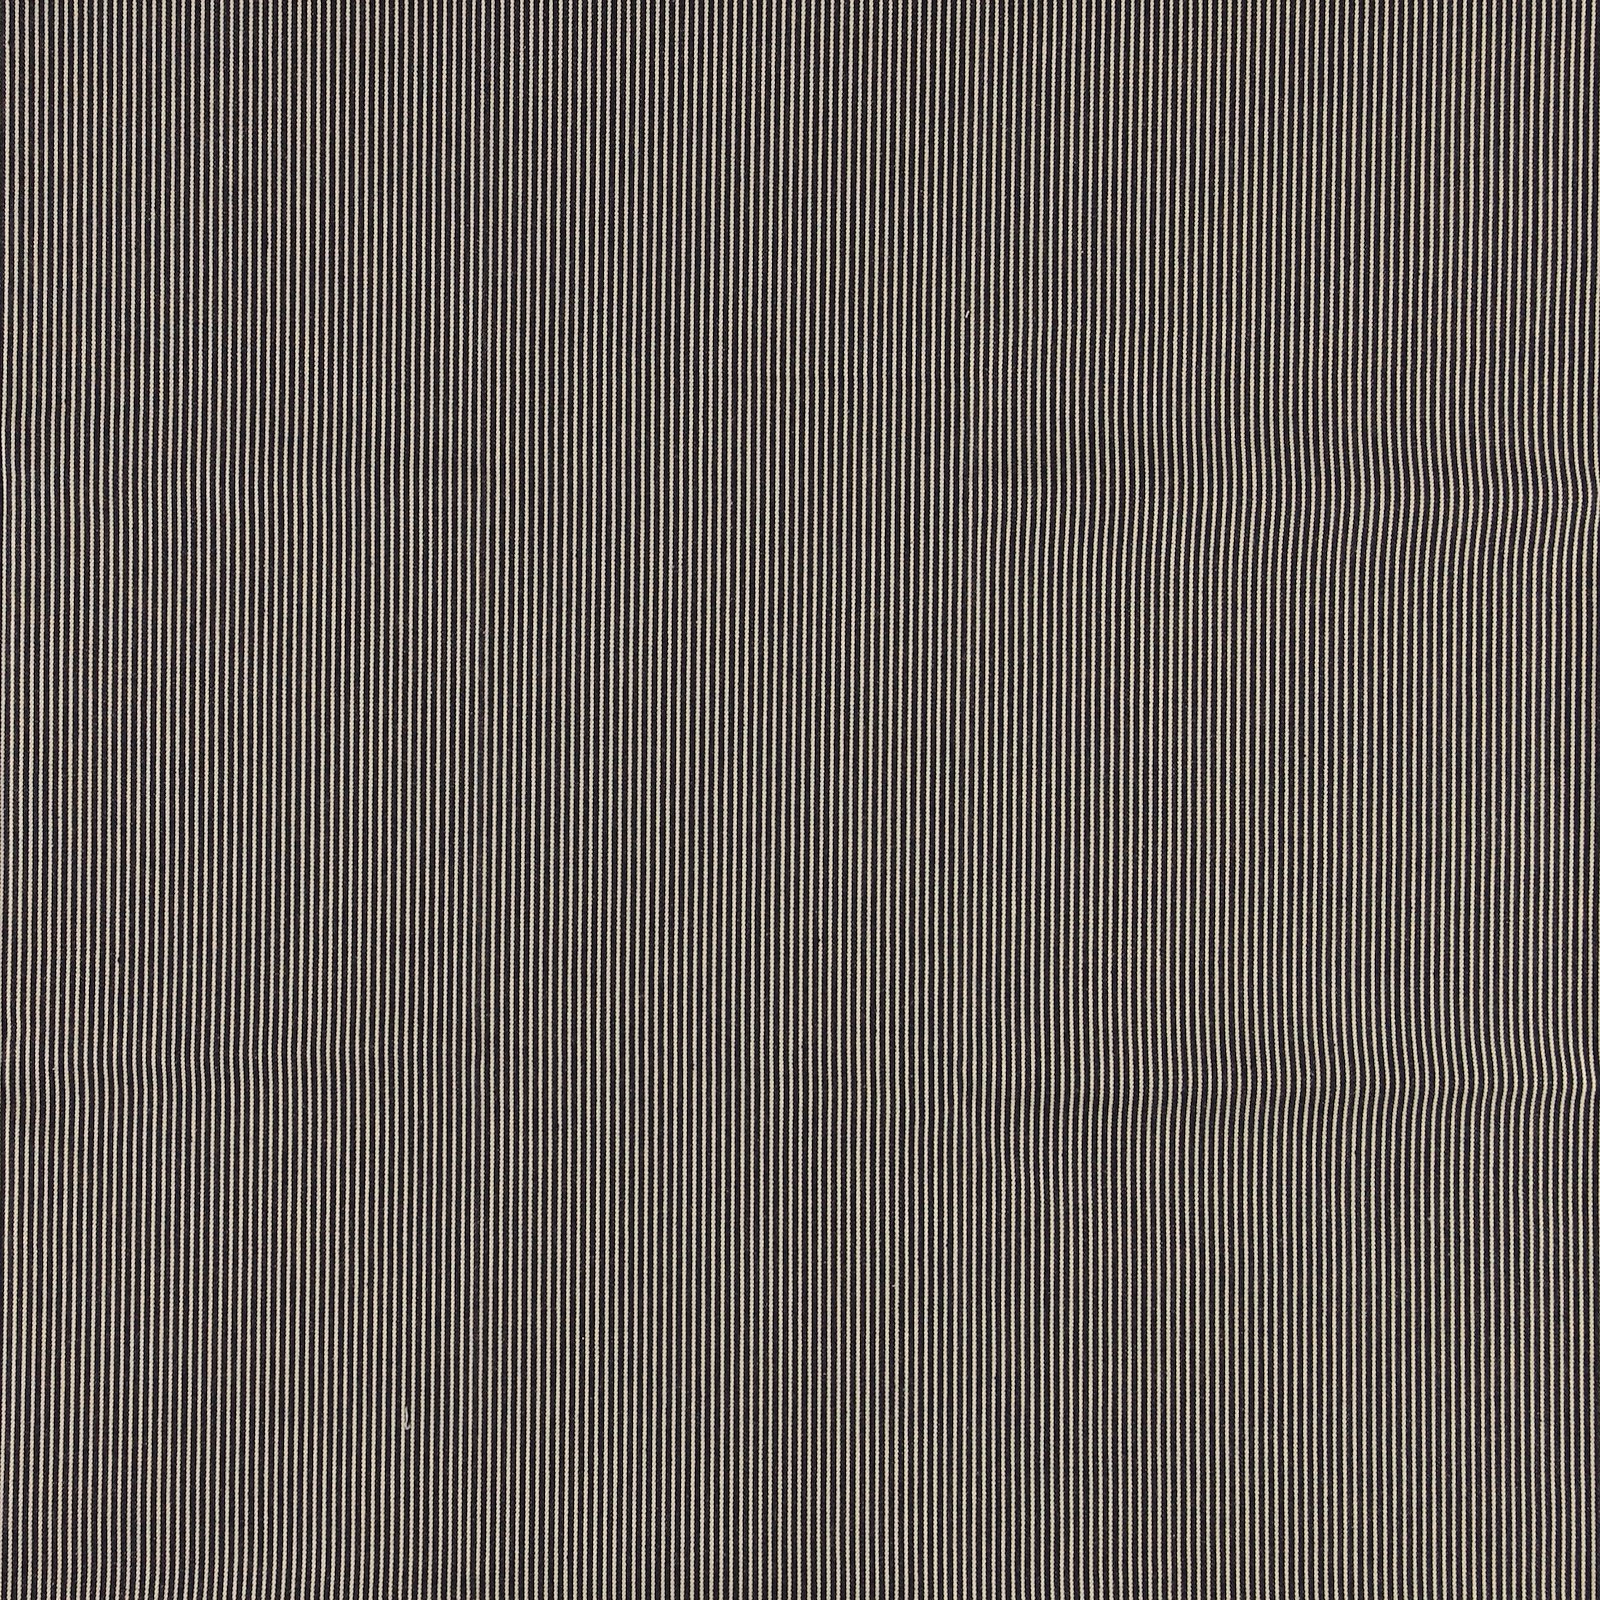 Denim yarn dyed stripe navy/white 9 oz 850347_pack_sp